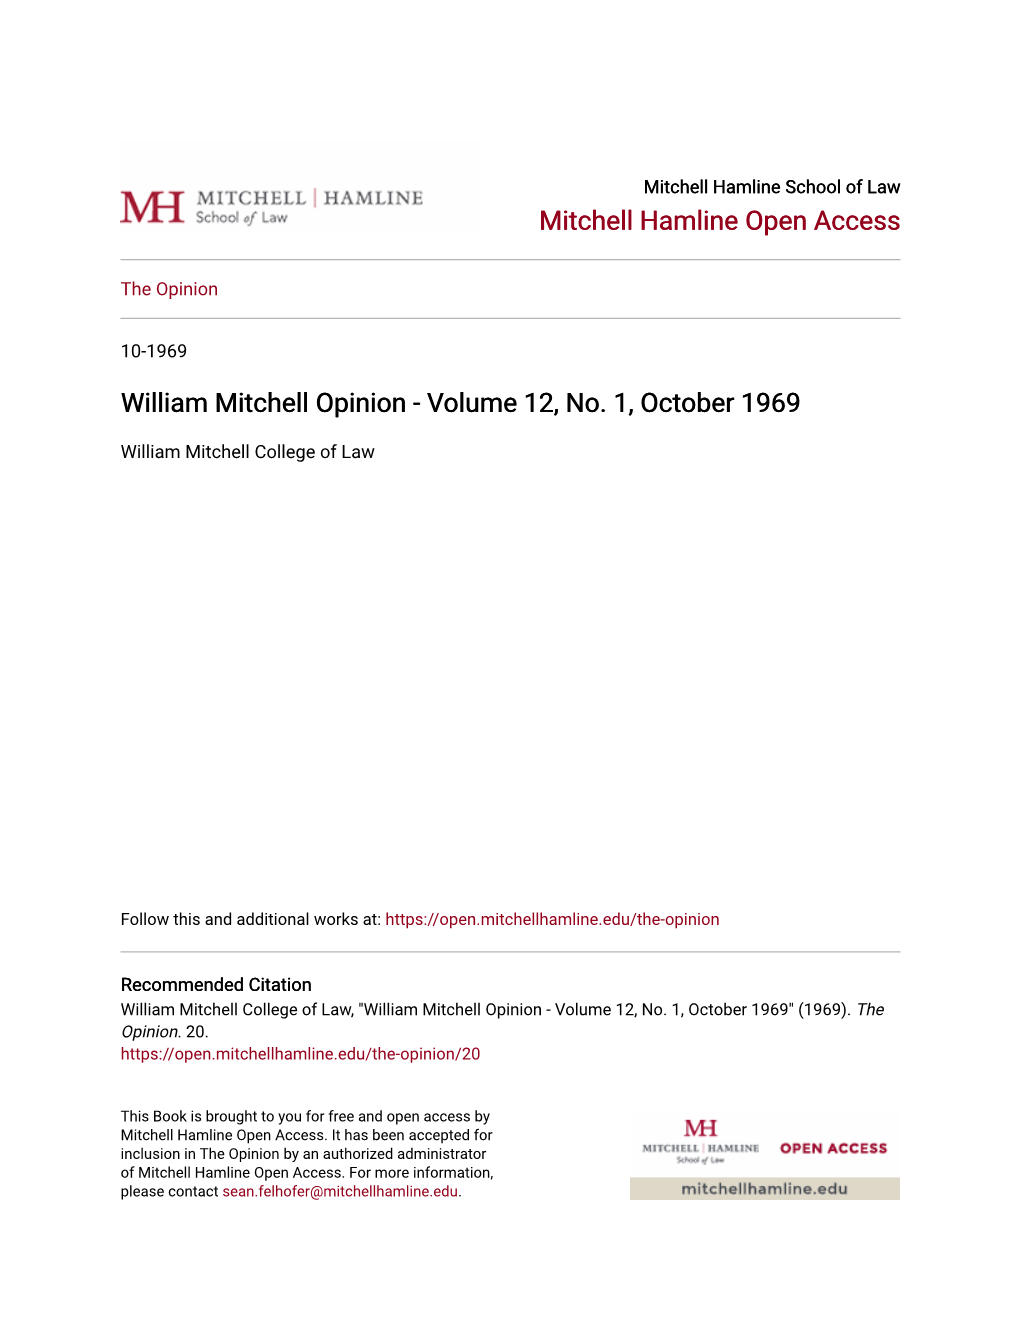 William Mitchell Opinion - Volume 12, No